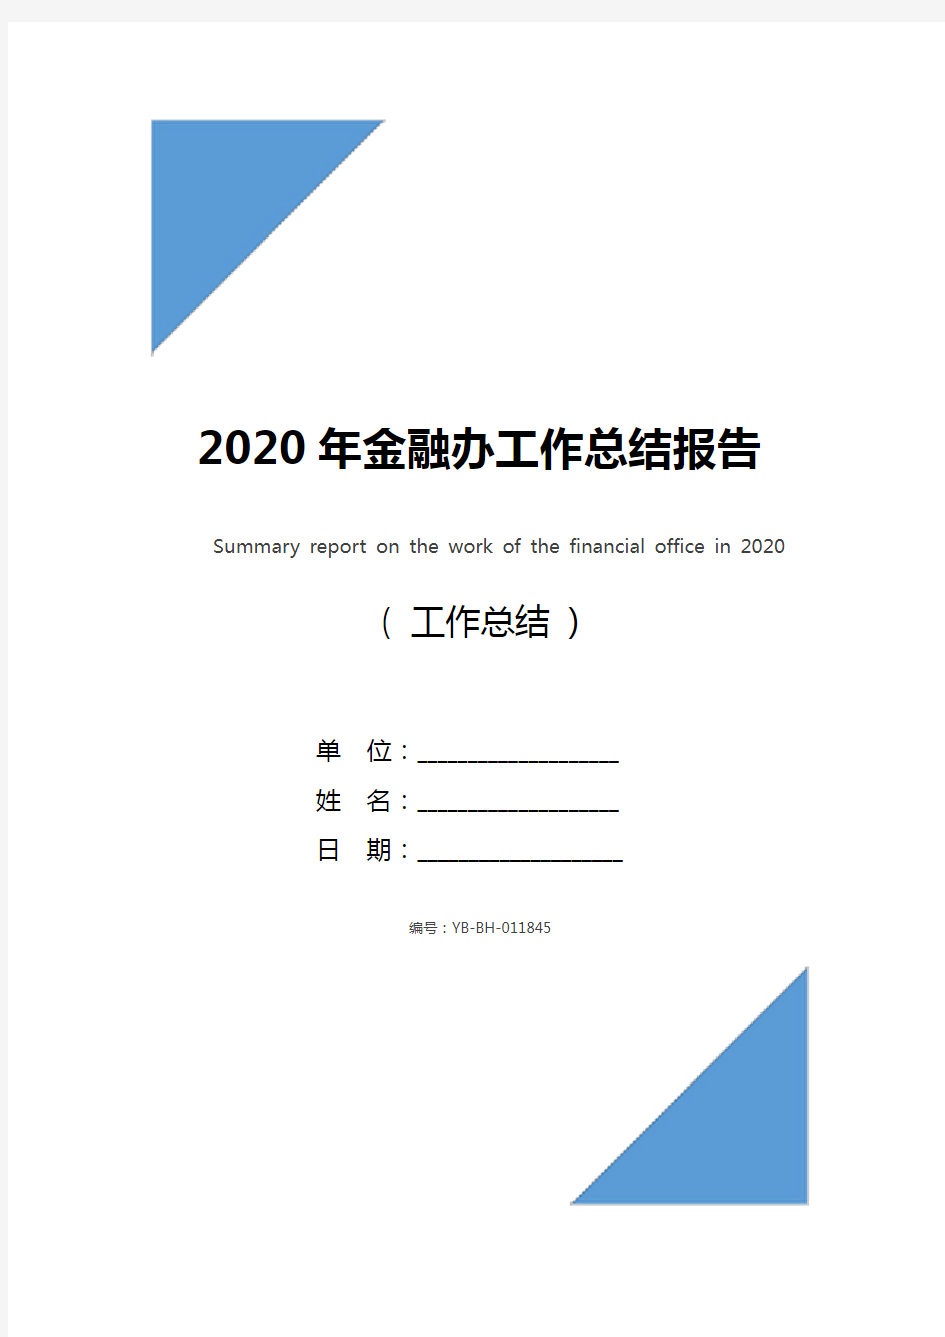 2020年金融办工作总结报告